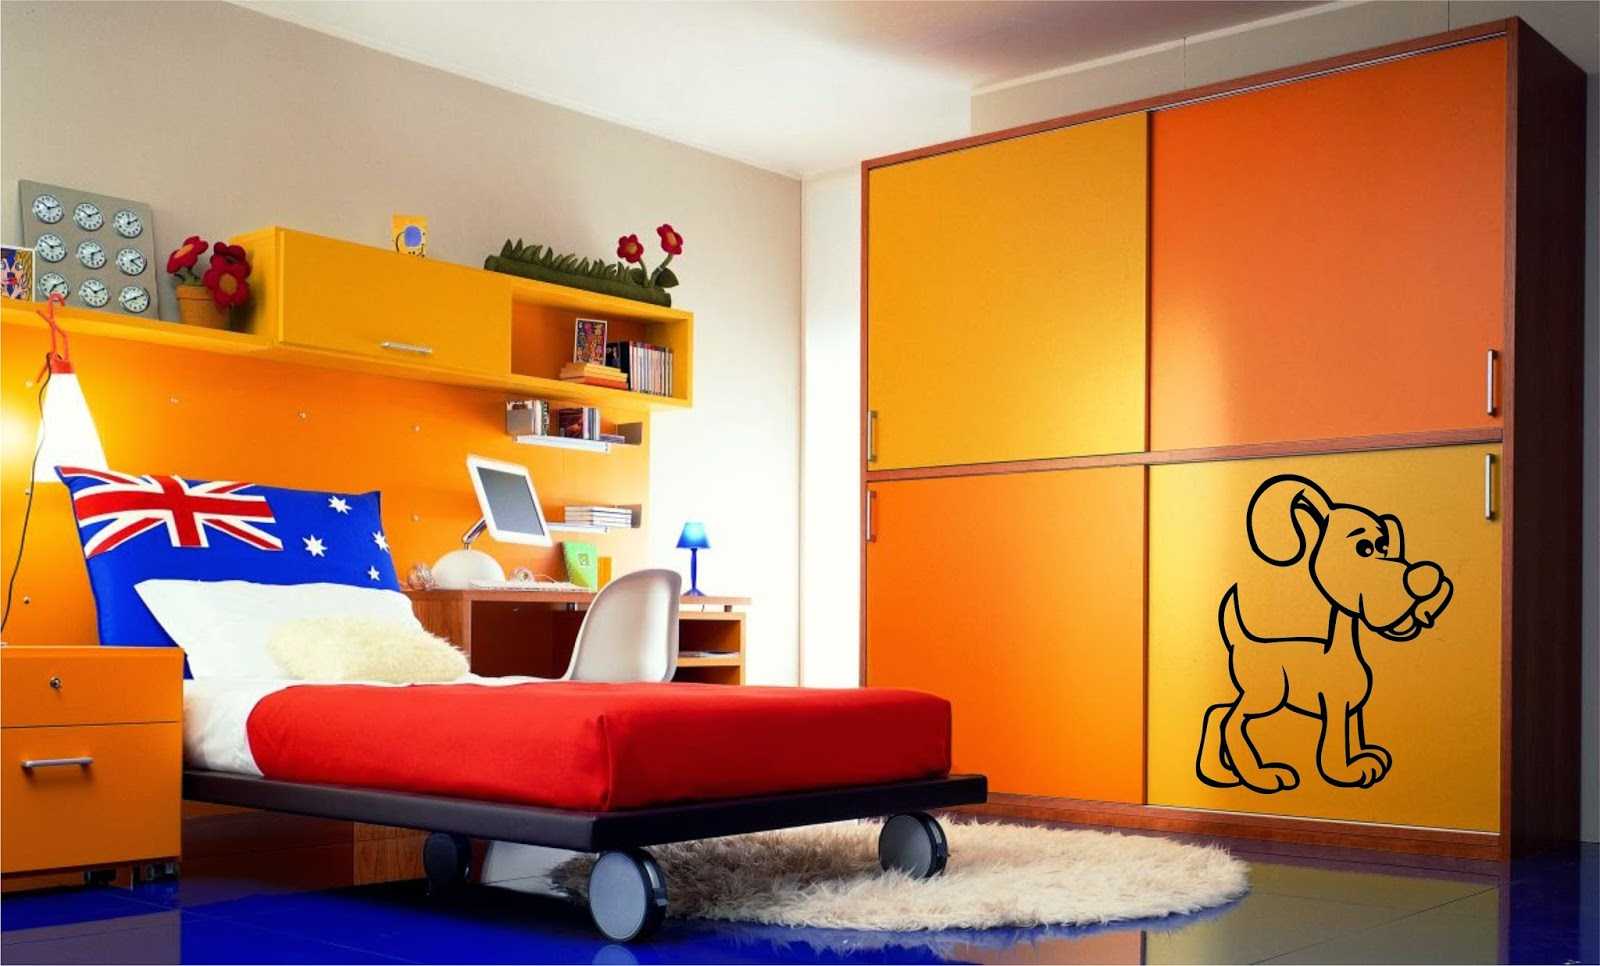 kombinace jasně oranžové ve stylu bytu s jinými barvami